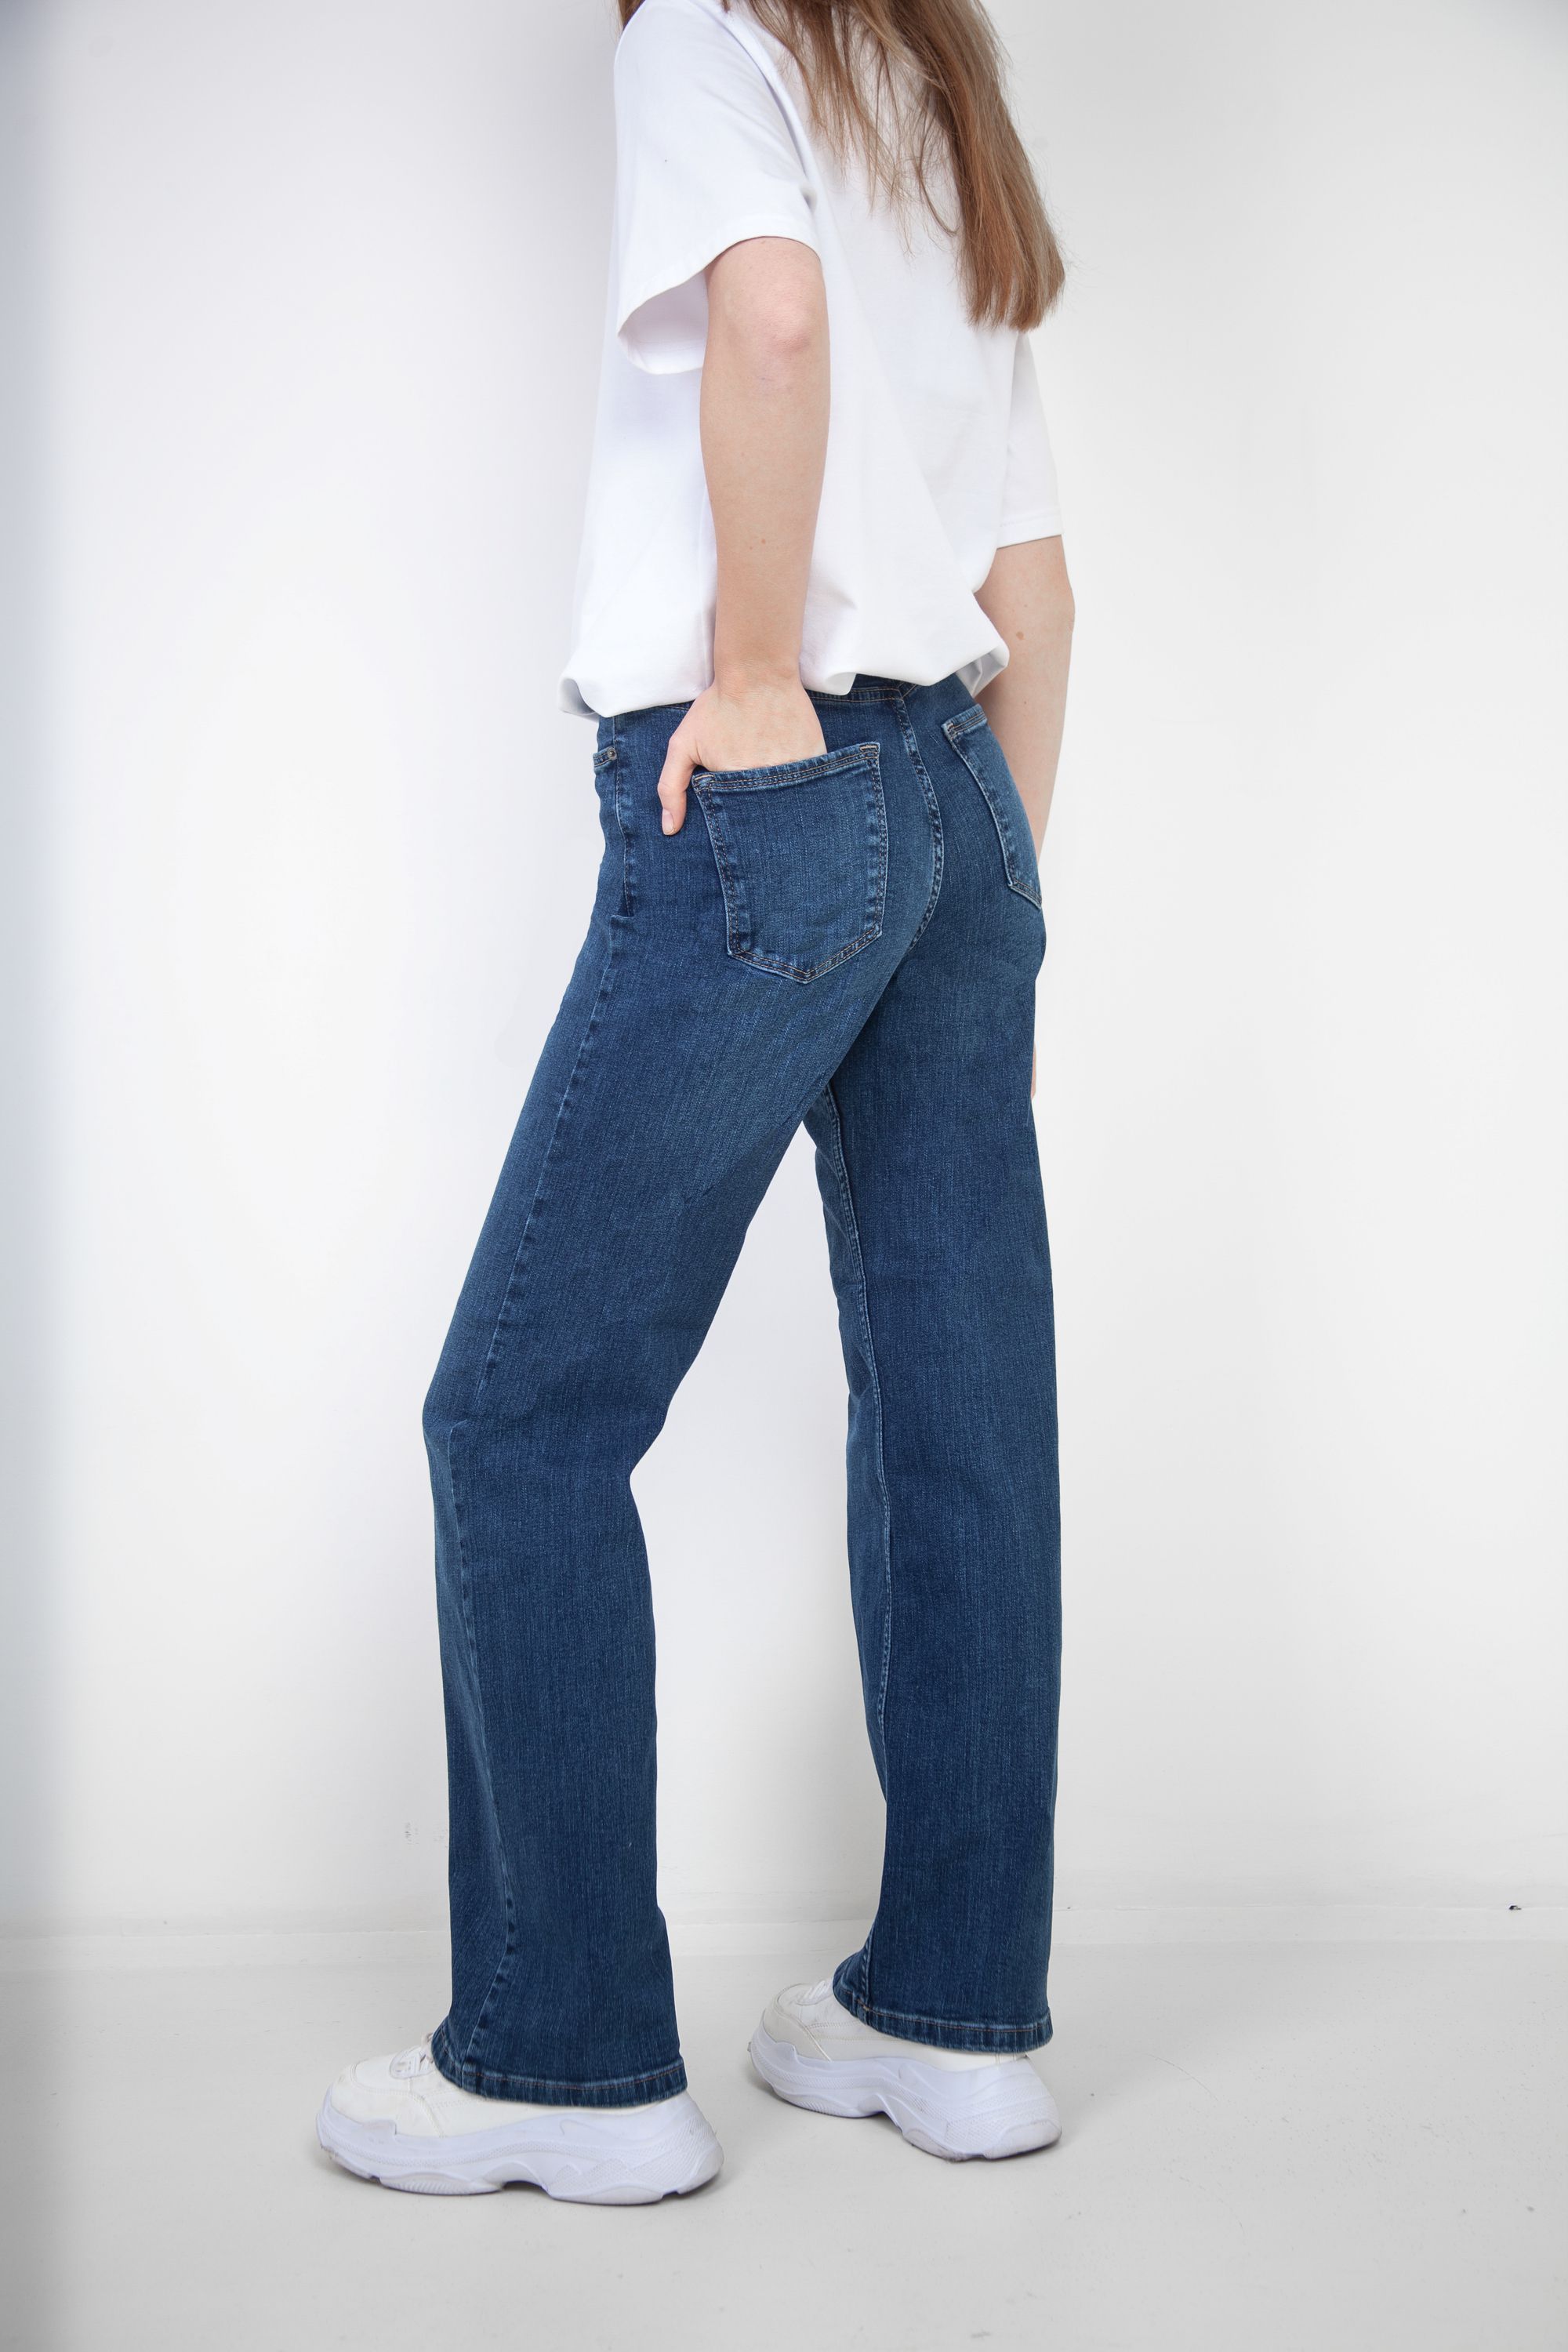 Брюки джинсовые женские "Lacarino" 6830 6830